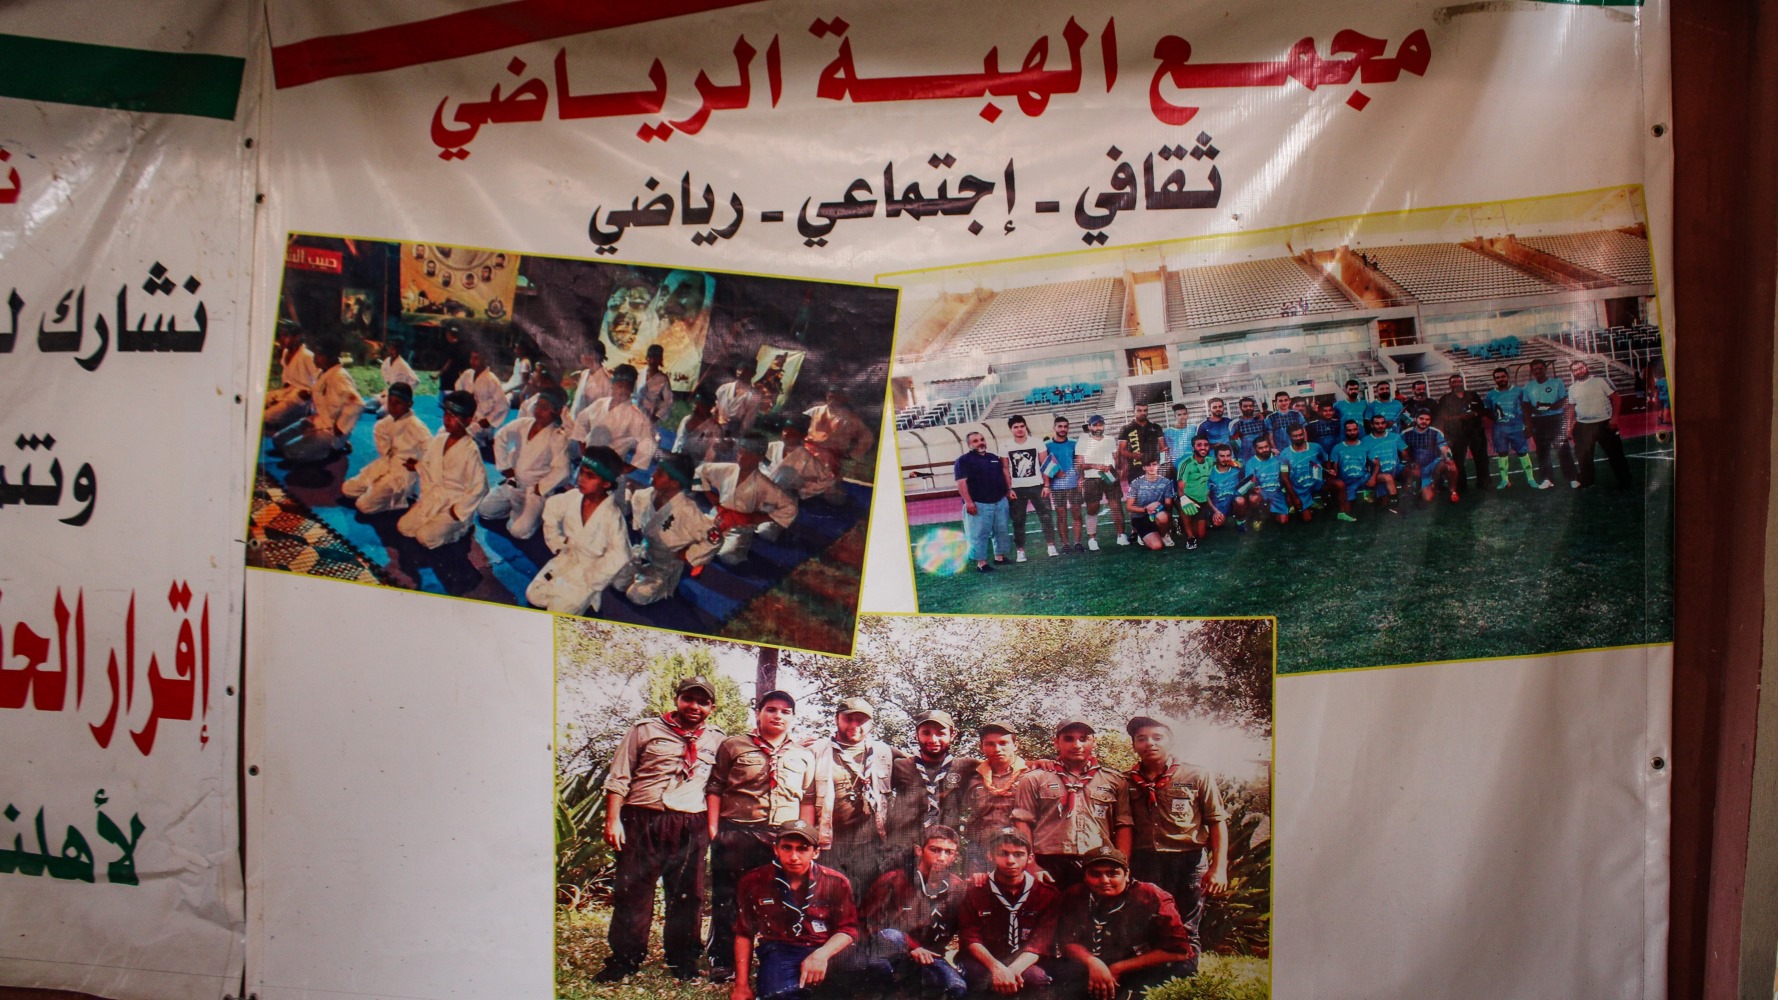 Les activités destinées aux jeunes d’Ain al-Helweh incluent le scoutisme, le football et les arts martiaux (Hanna Davis/MEE)